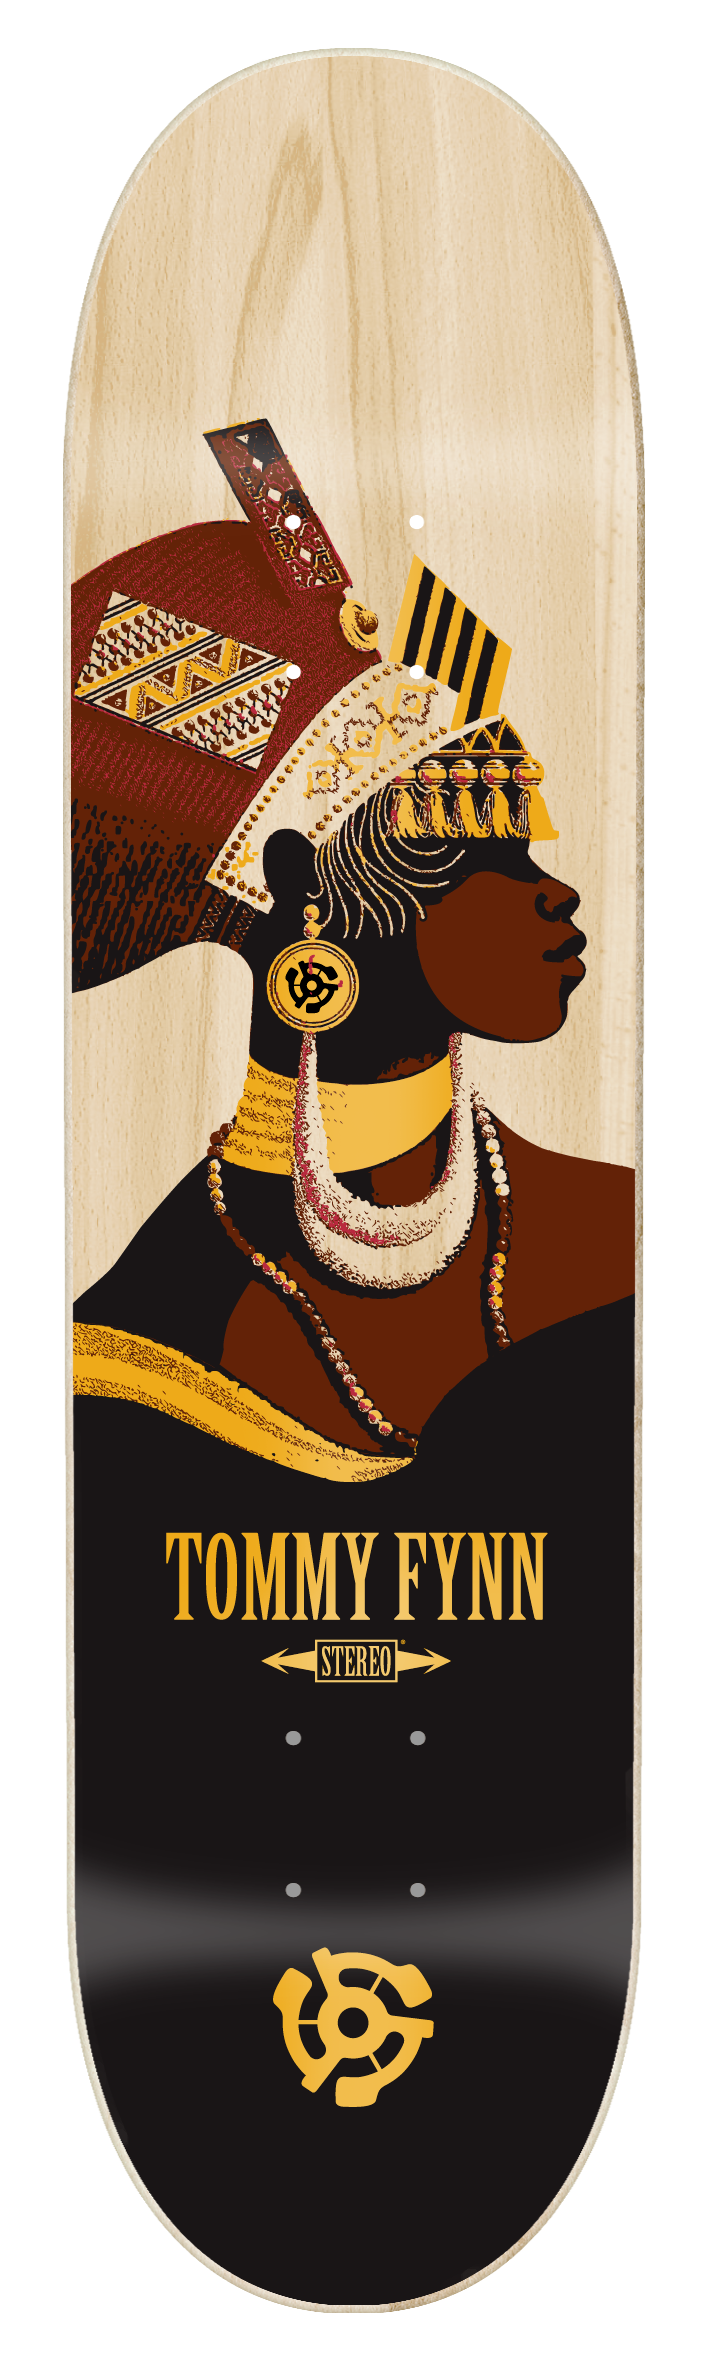 Fynn-african-nubian-mockup-gold-foil.png